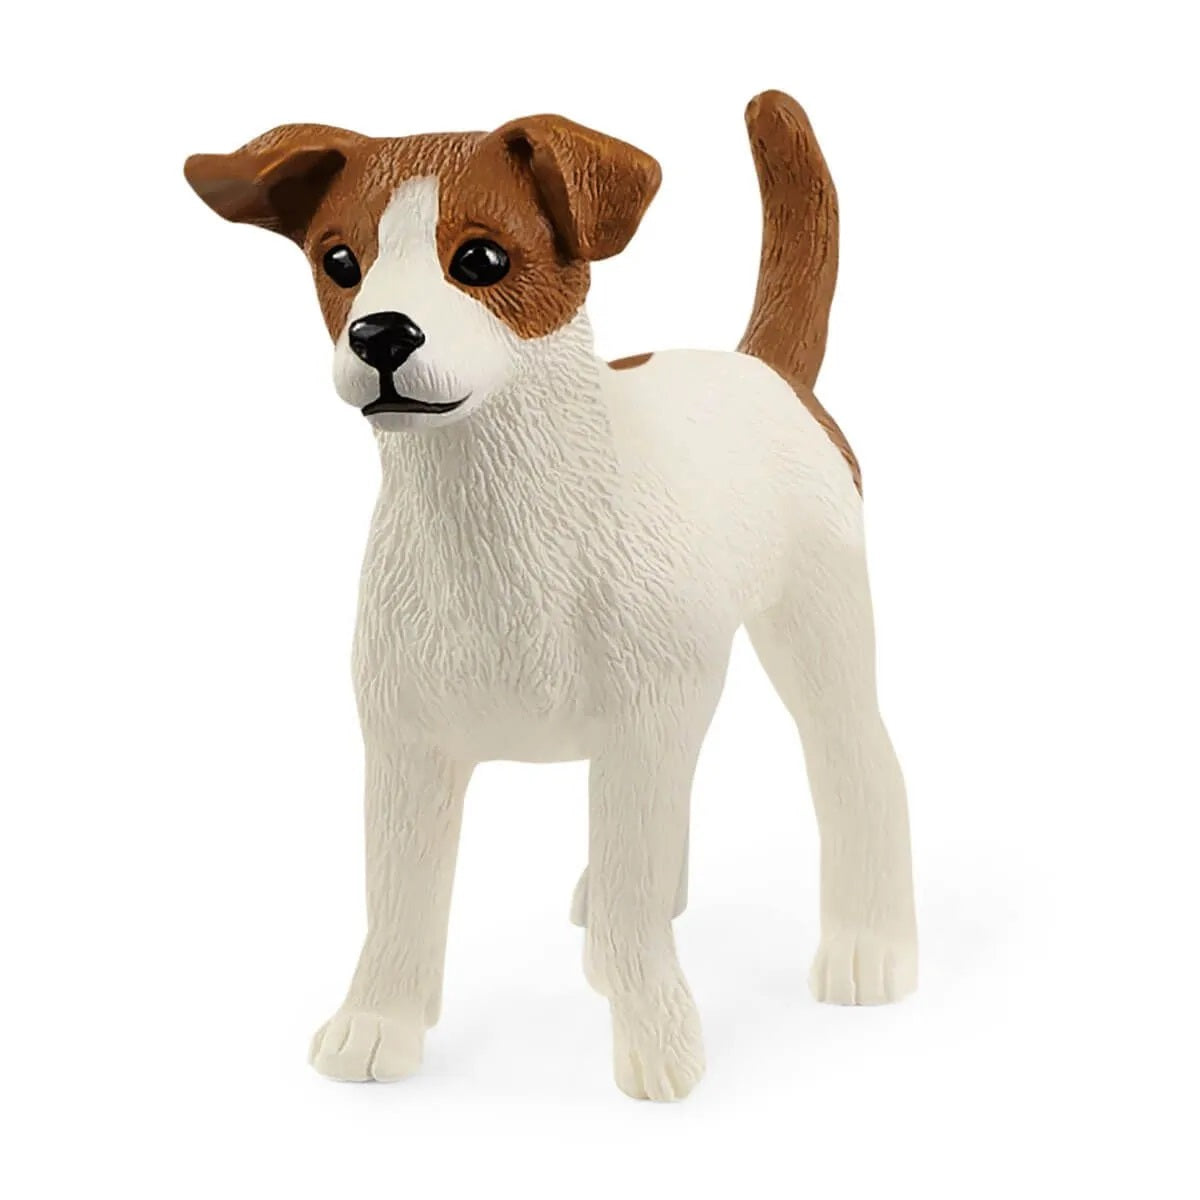 Schleich 13916 Jack Russell Terrier, White & Brown